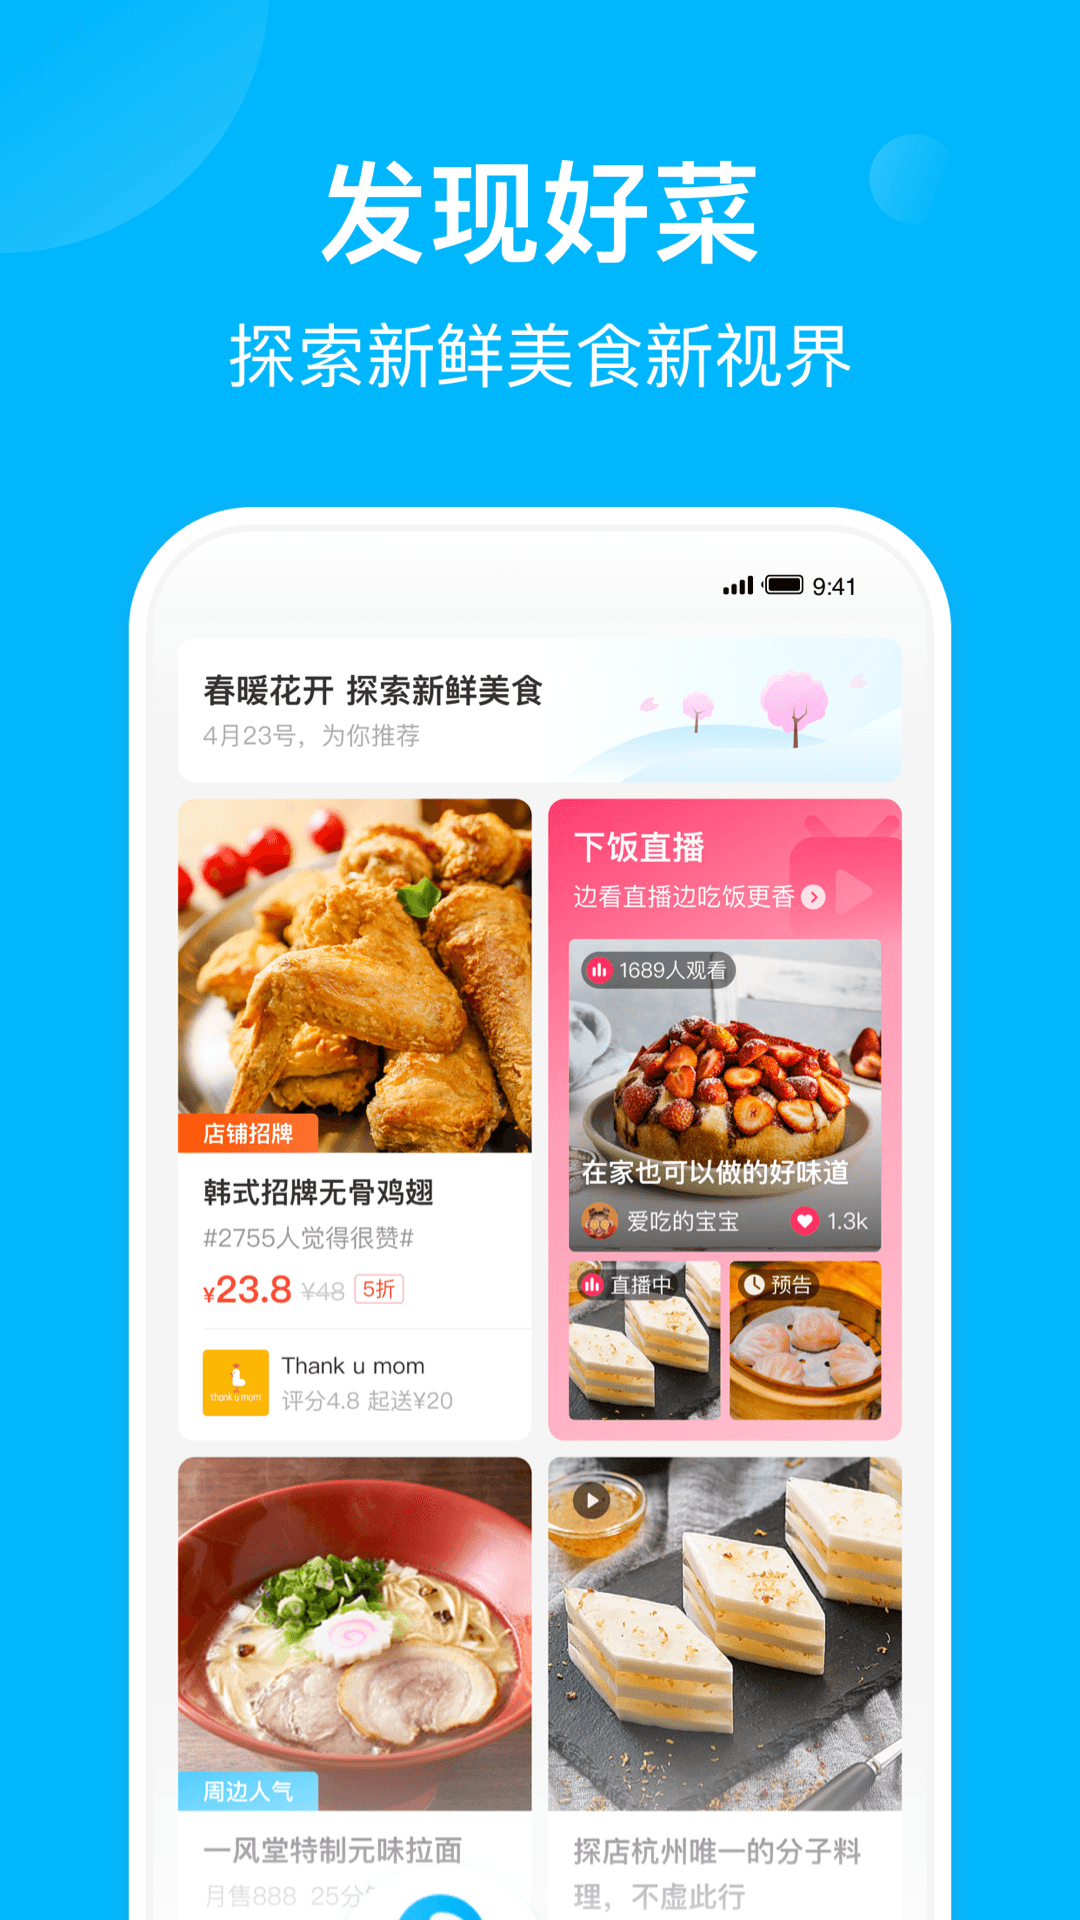 「饿了么app图集|安卓手机截图欣赏」饿了么官方最新版一键下载